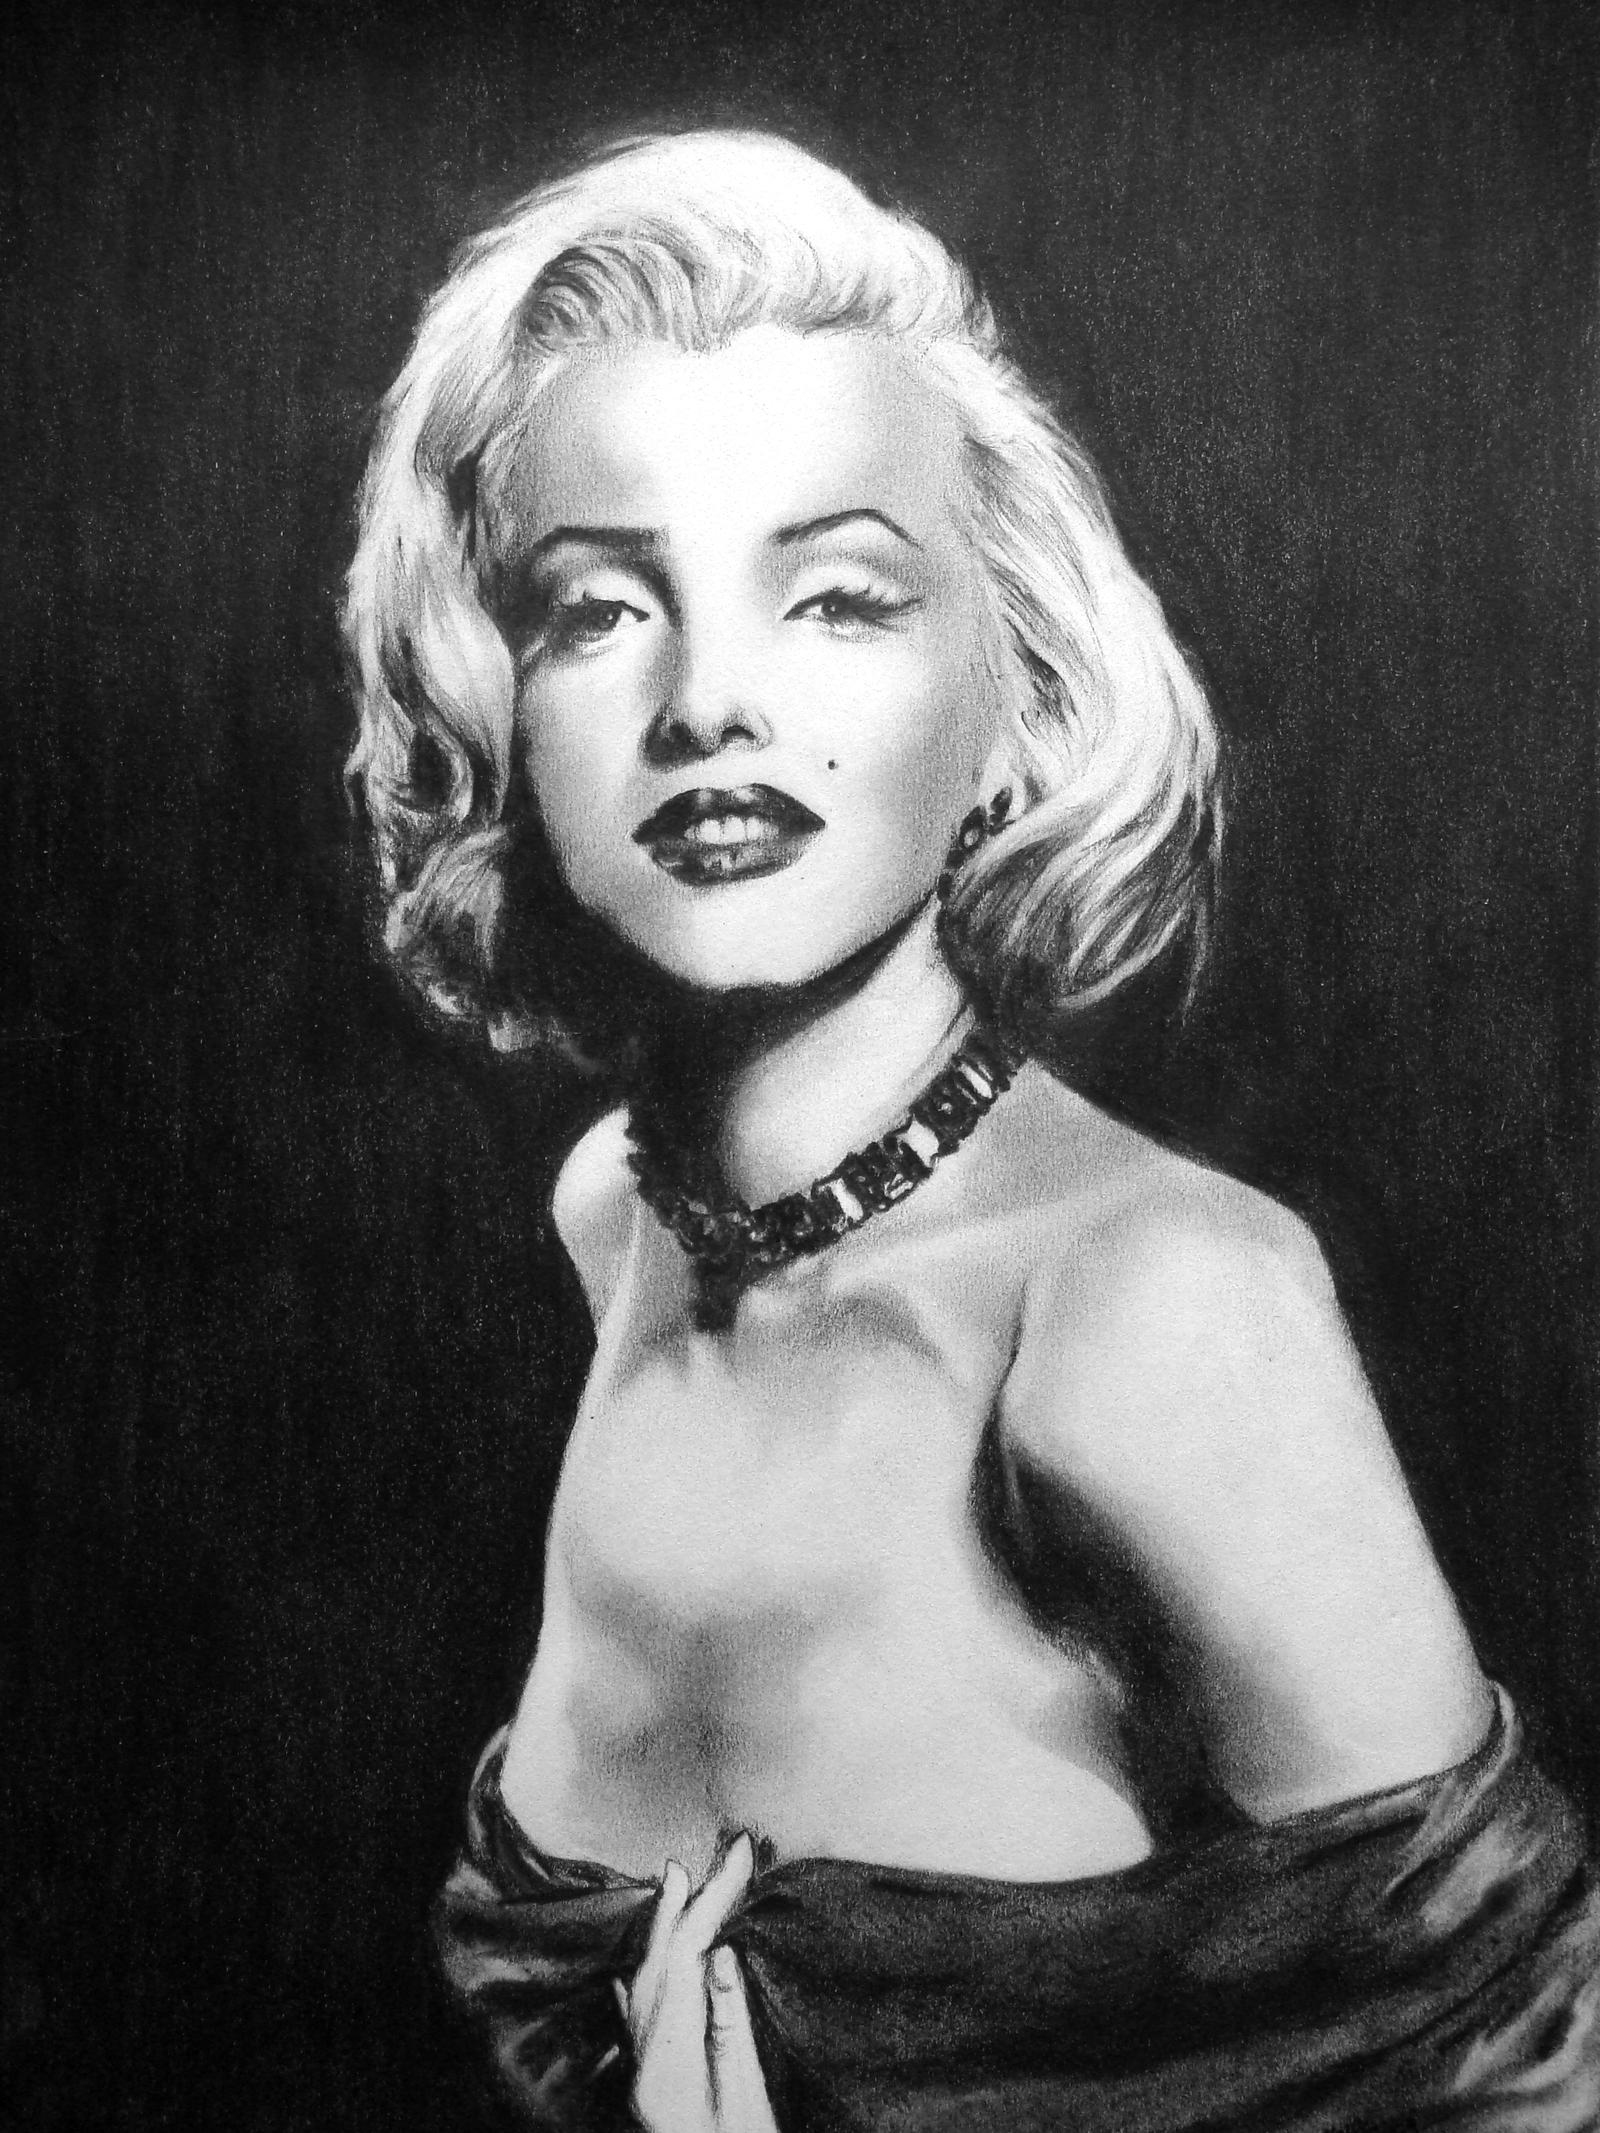 Amber Rose Marilyn Monroe wig